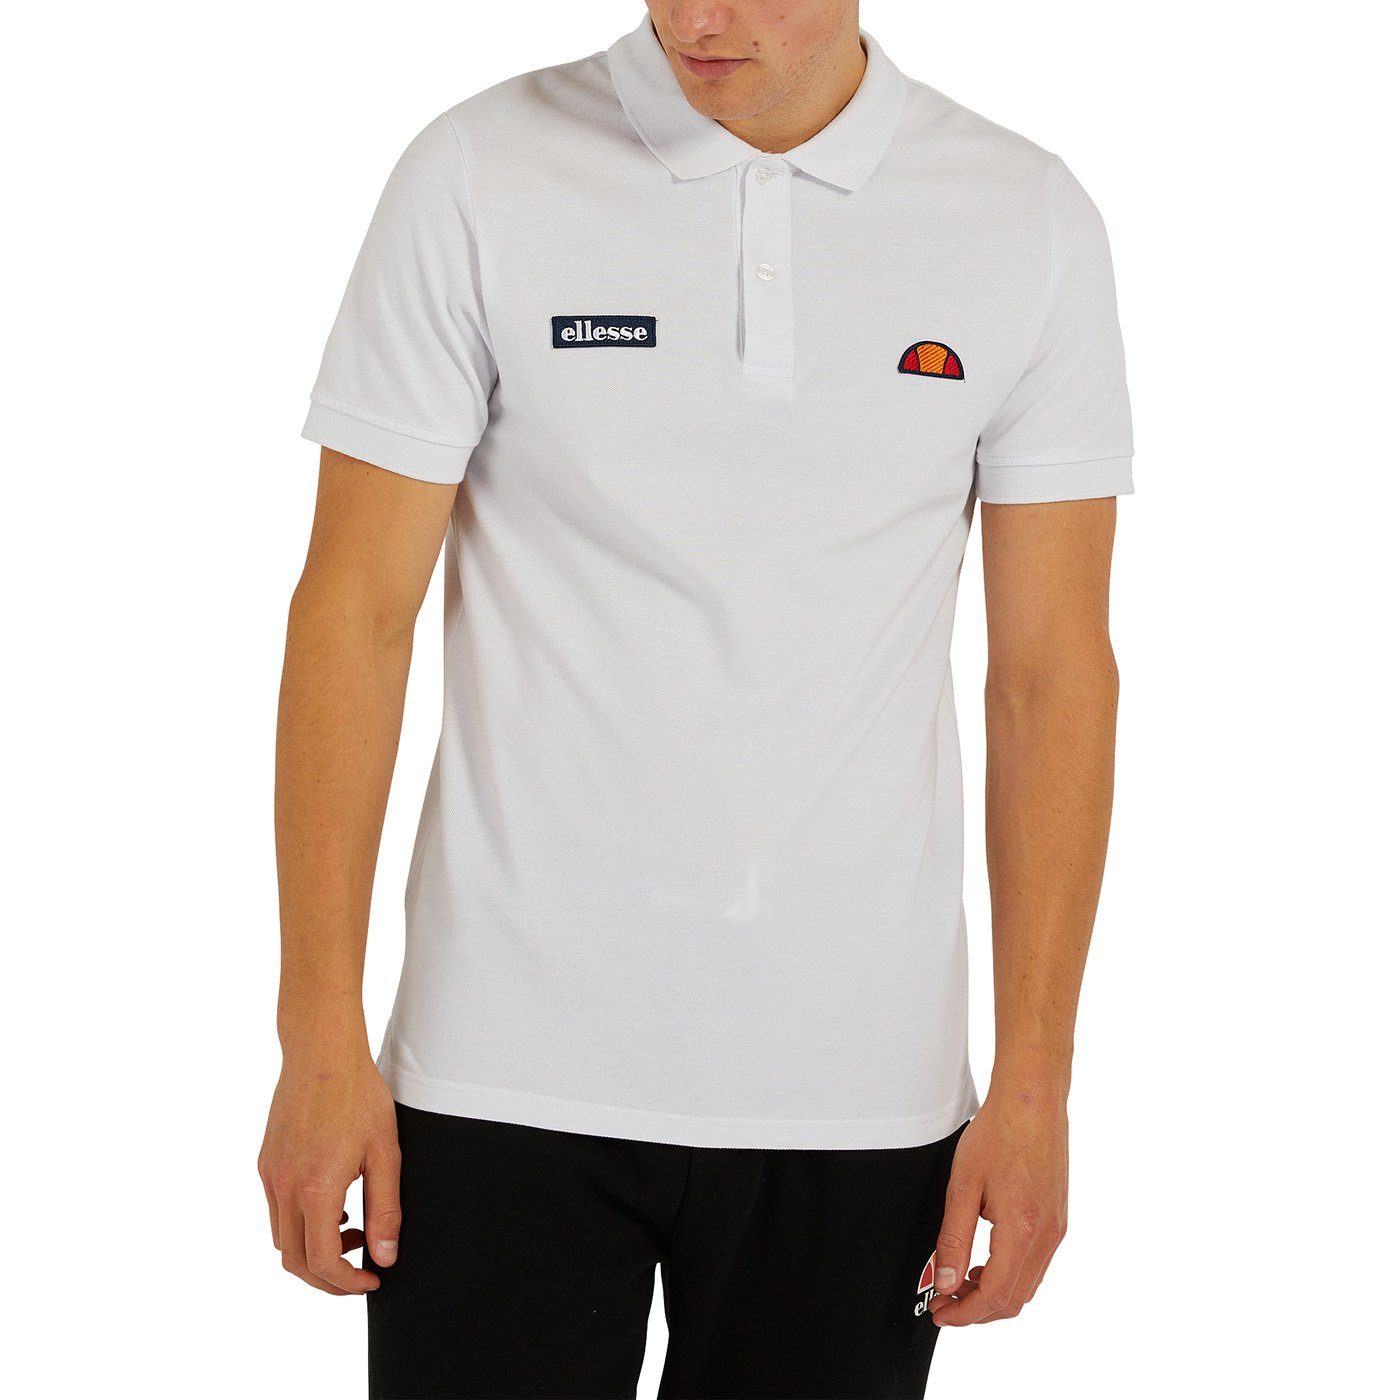 Ellesse Poloshirt Herren Polo-Shirt MONTURA - Weiß Pique, Kurzarm